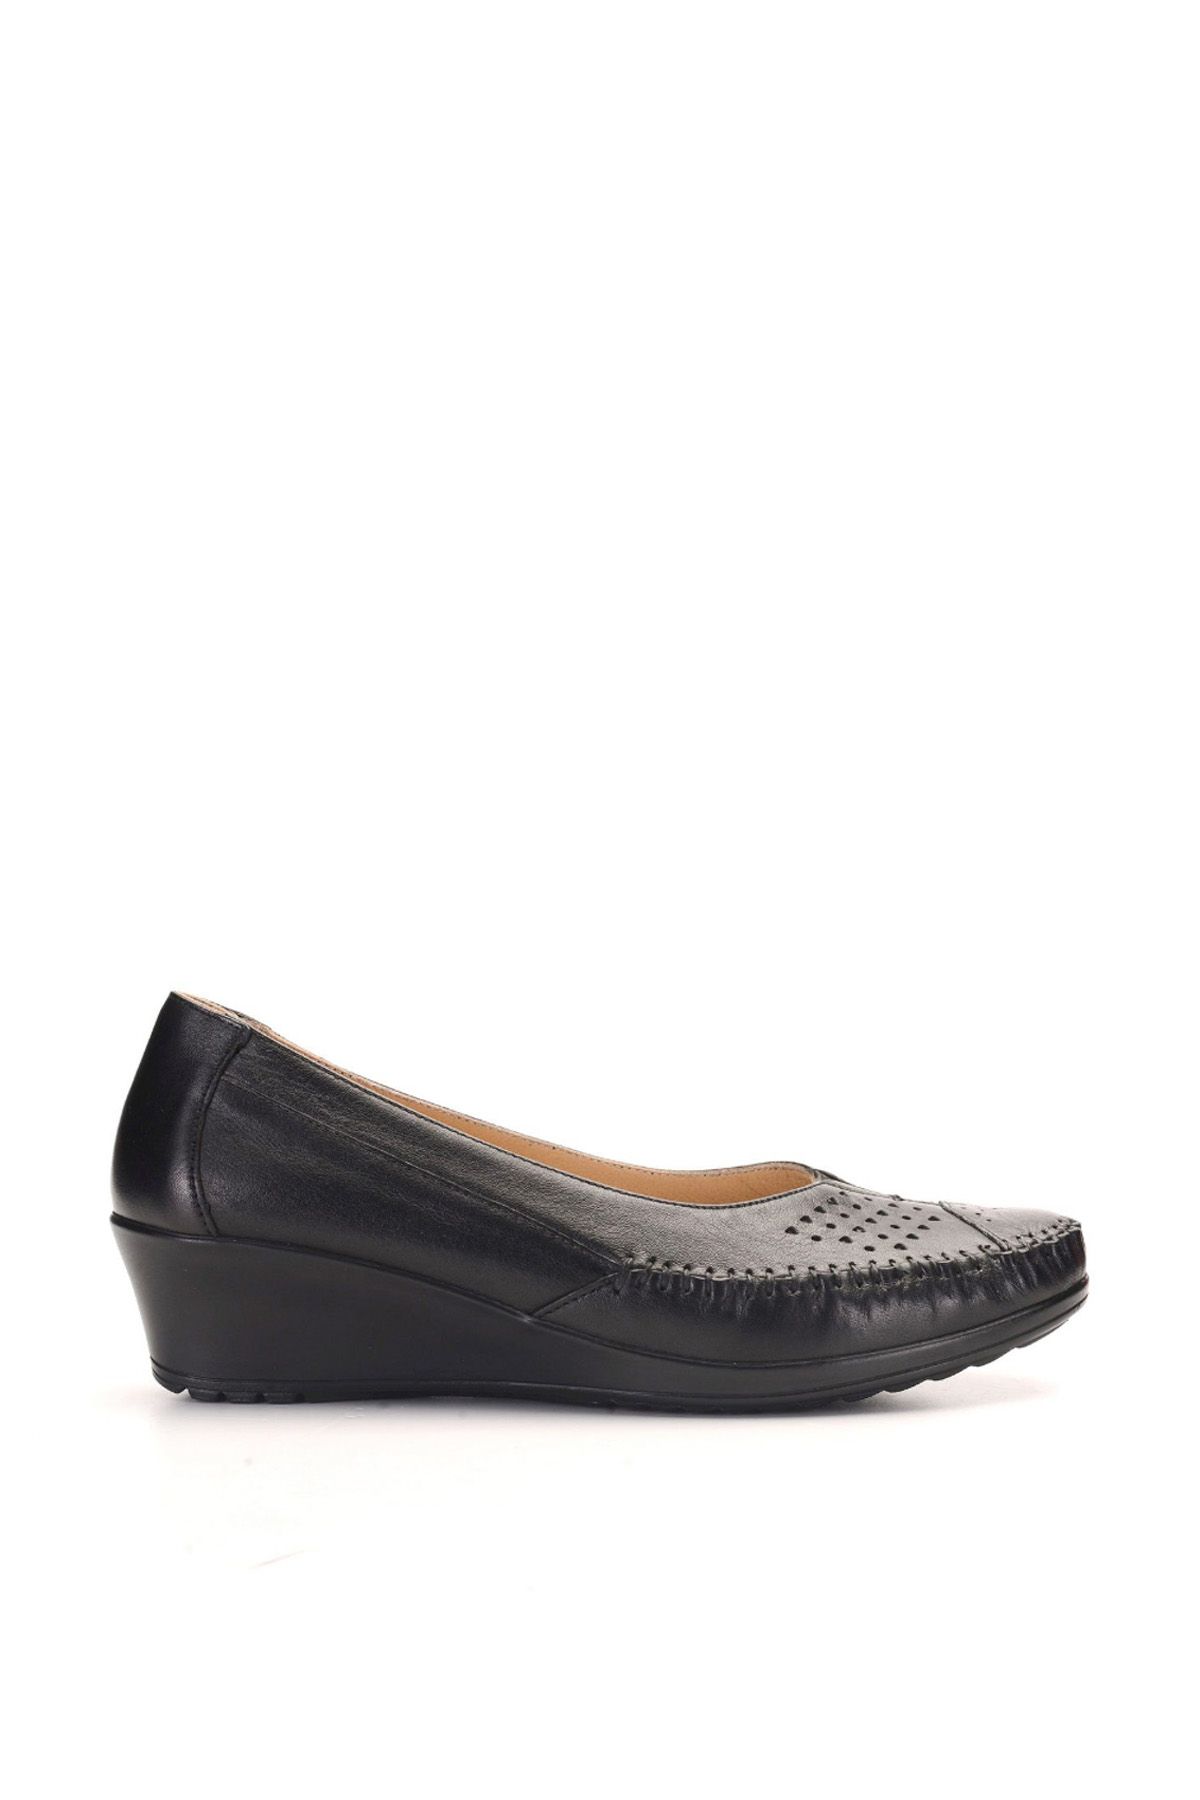 Esem Comfort Siyah Kadın - ESEM 144 Günlük Giyim Deri Ayakkabı - EA15CK002-500